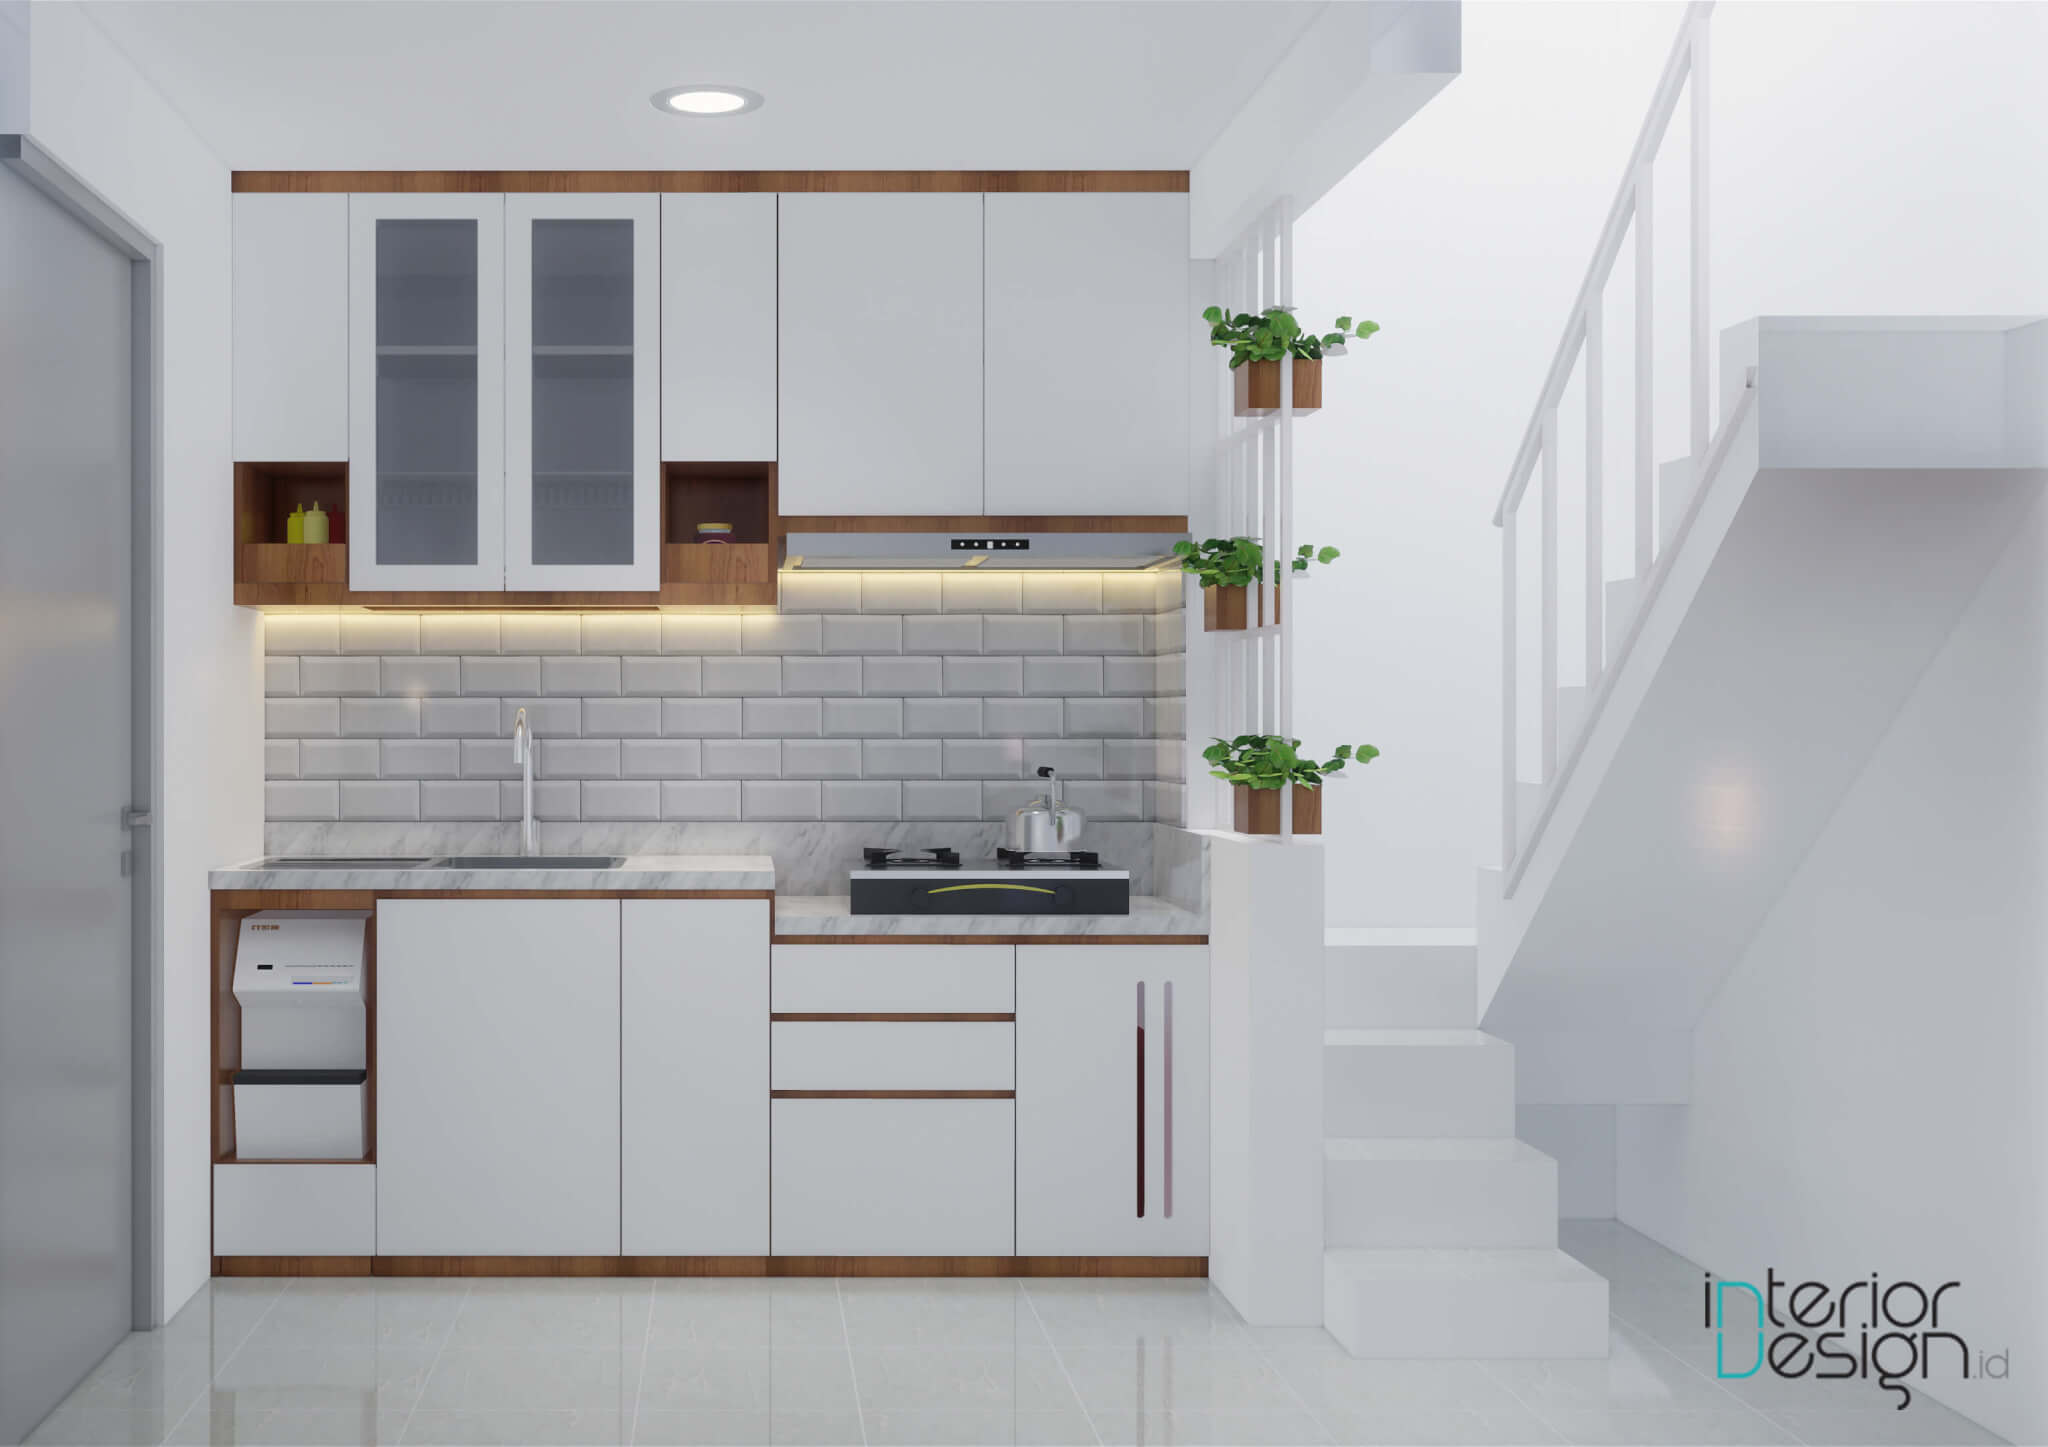 Penerapan Warna Putih di Area Dapur agar Terlihat Lebih Menarik